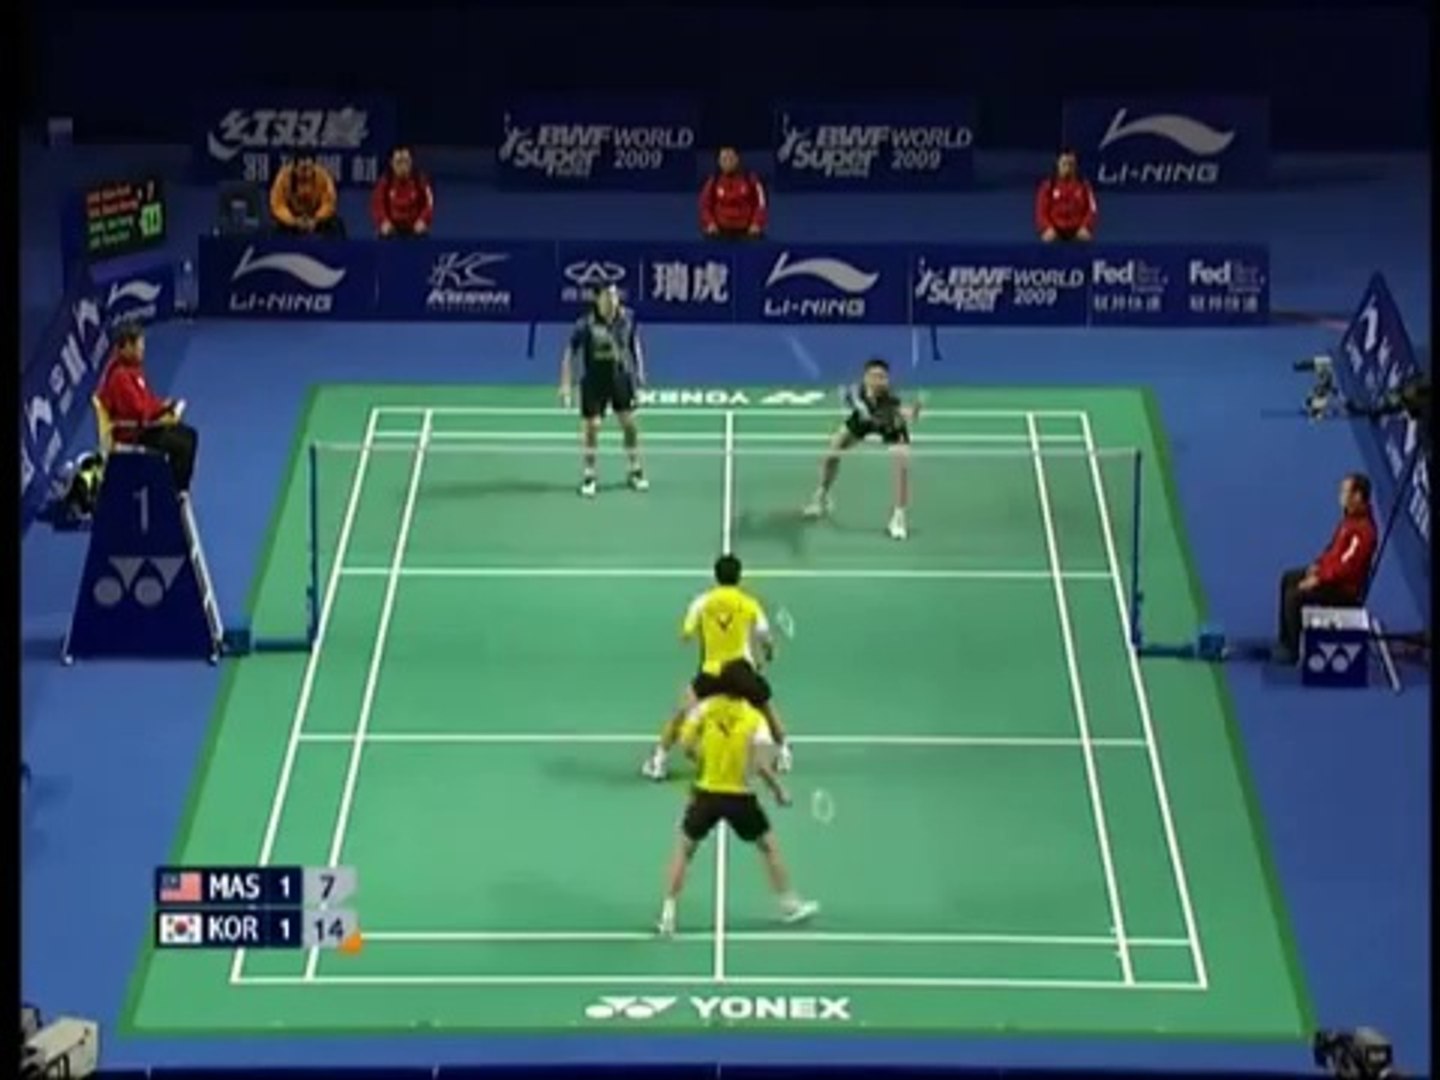 [Highlights] Badminton KOO Kien Keat Tan Boon Heong vs Lee Yong Dae CHUNG Jae Sung 2009 China [3...